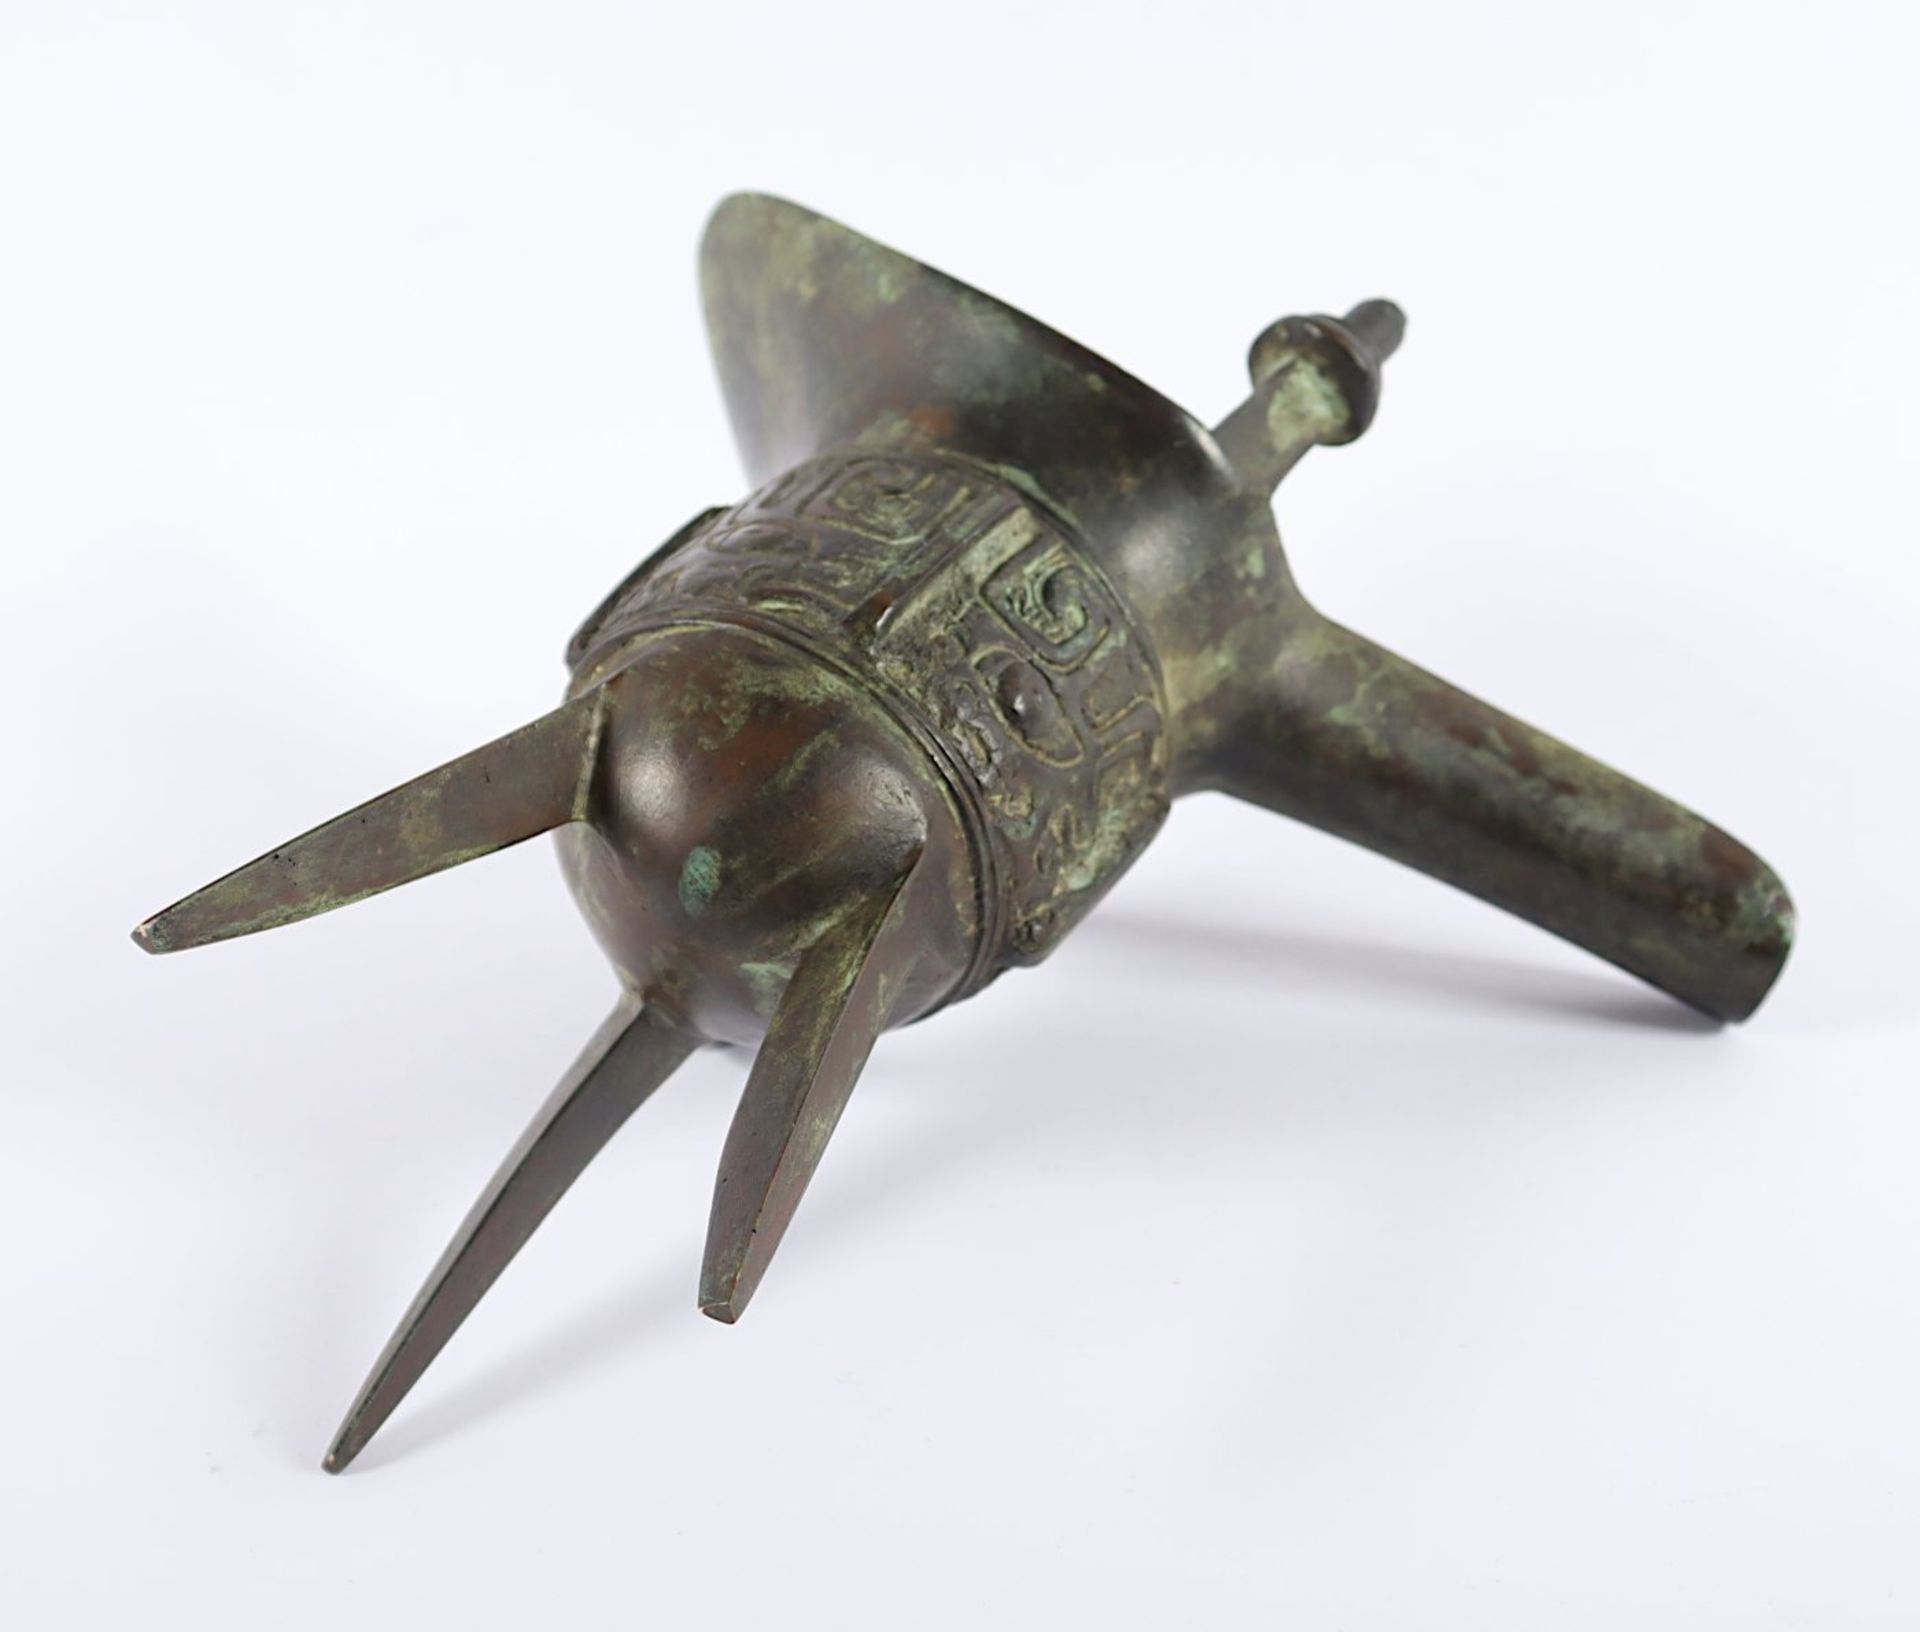 ALTARGEFÄSS VOM TYP JUE, Bronze patiniert, auf der Wandung im Relief Taotie-Masken, H 18, CHINA - Image 3 of 3